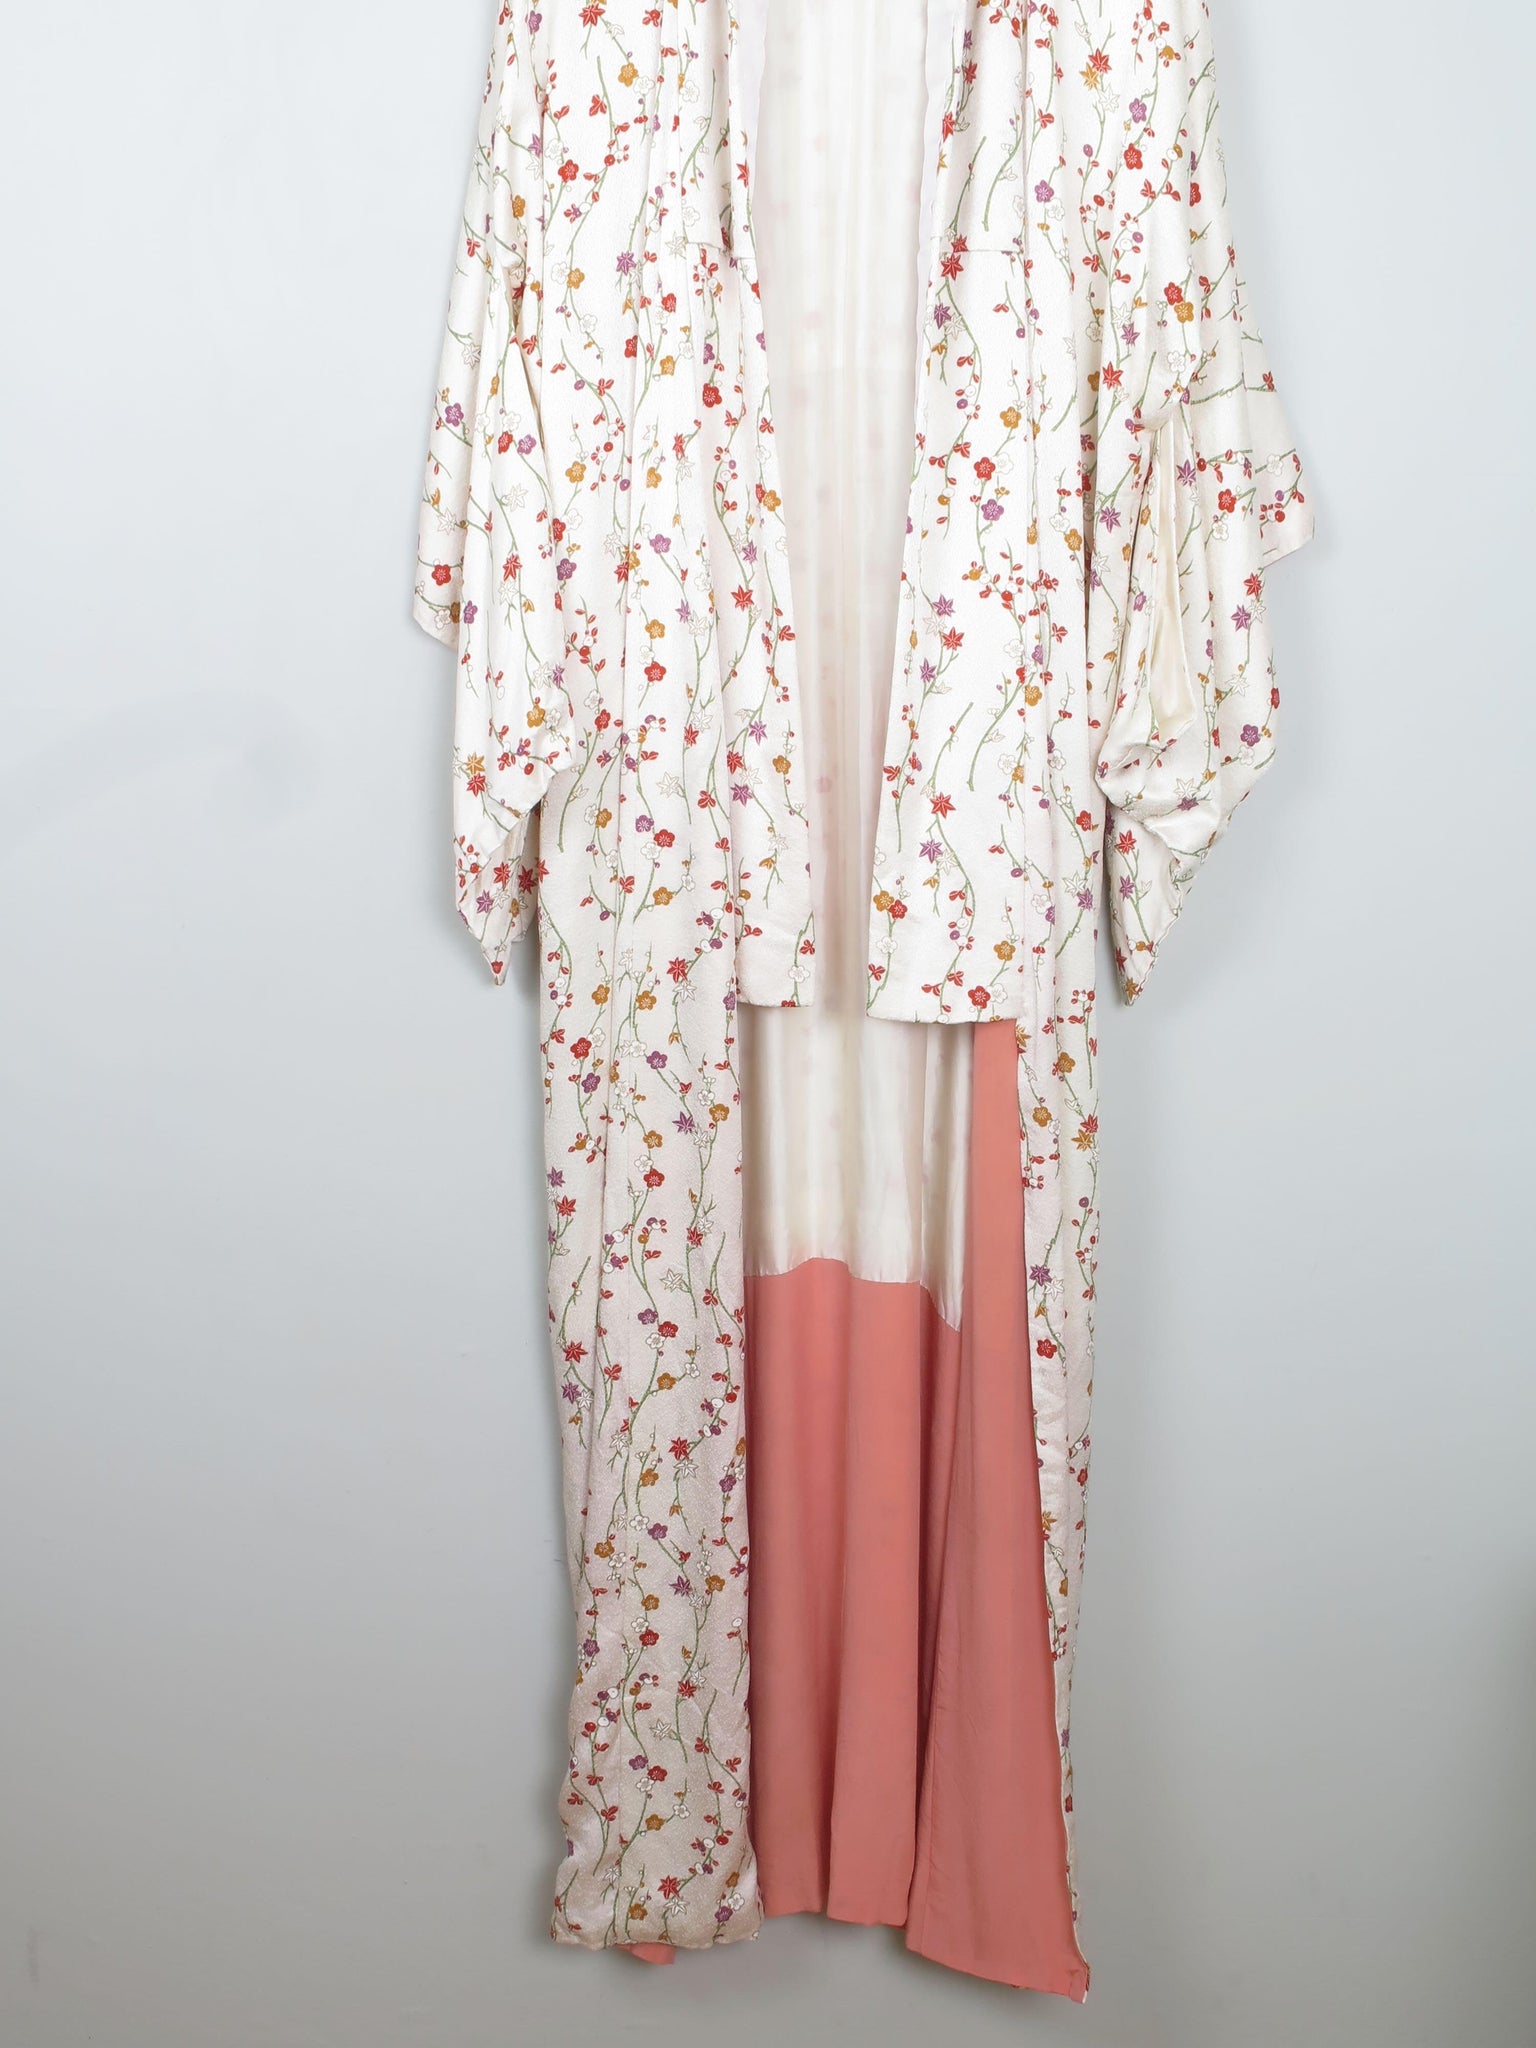 Cream Silk Colourful Printed  Vintage Kimono S-L - The Harlequin